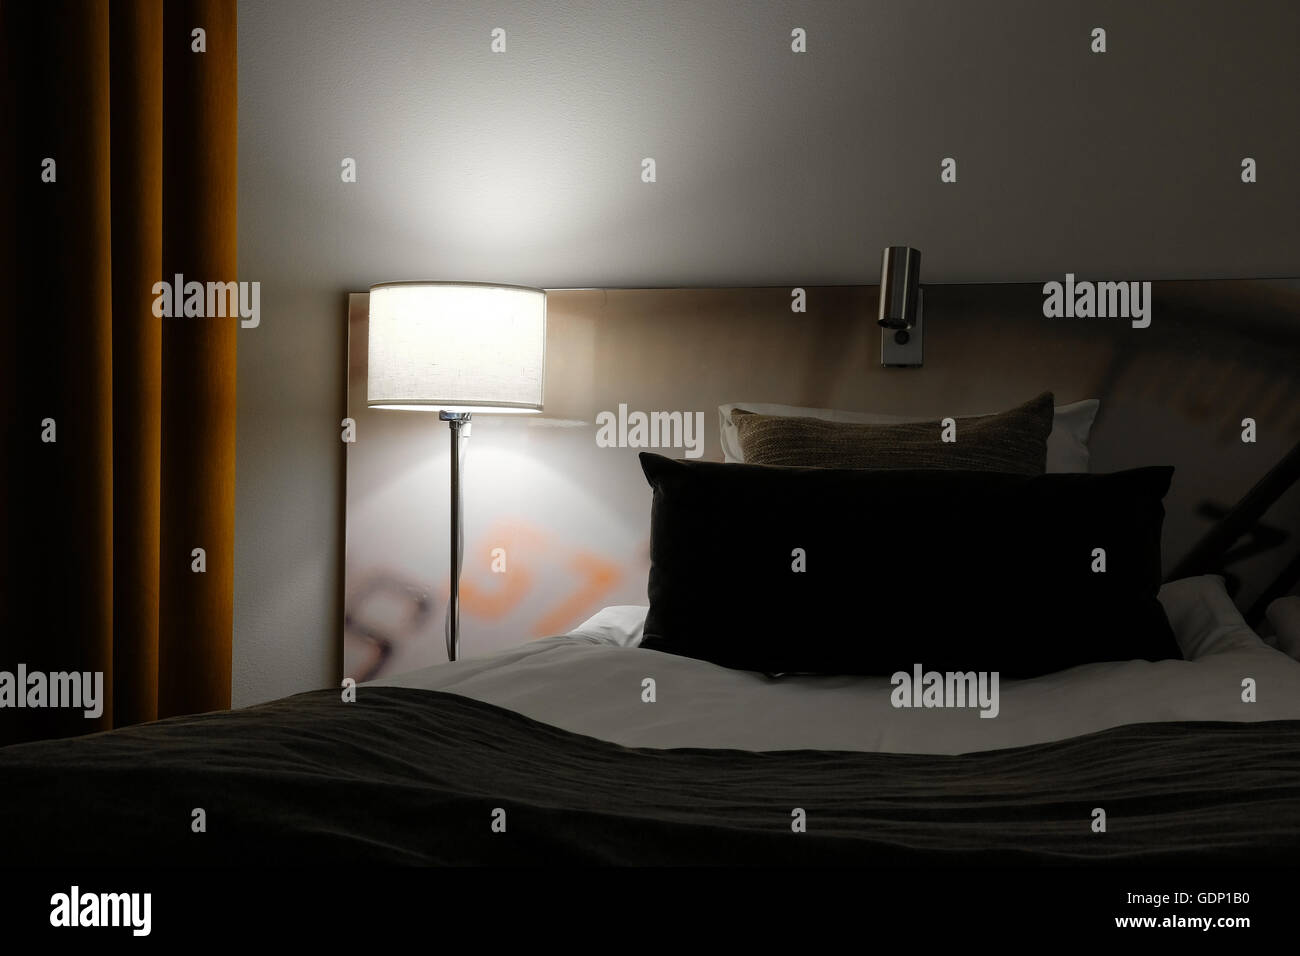 Chambre d'hôtel de nuit, que couvercle en une petite lampe à côté du lit Banque D'Images